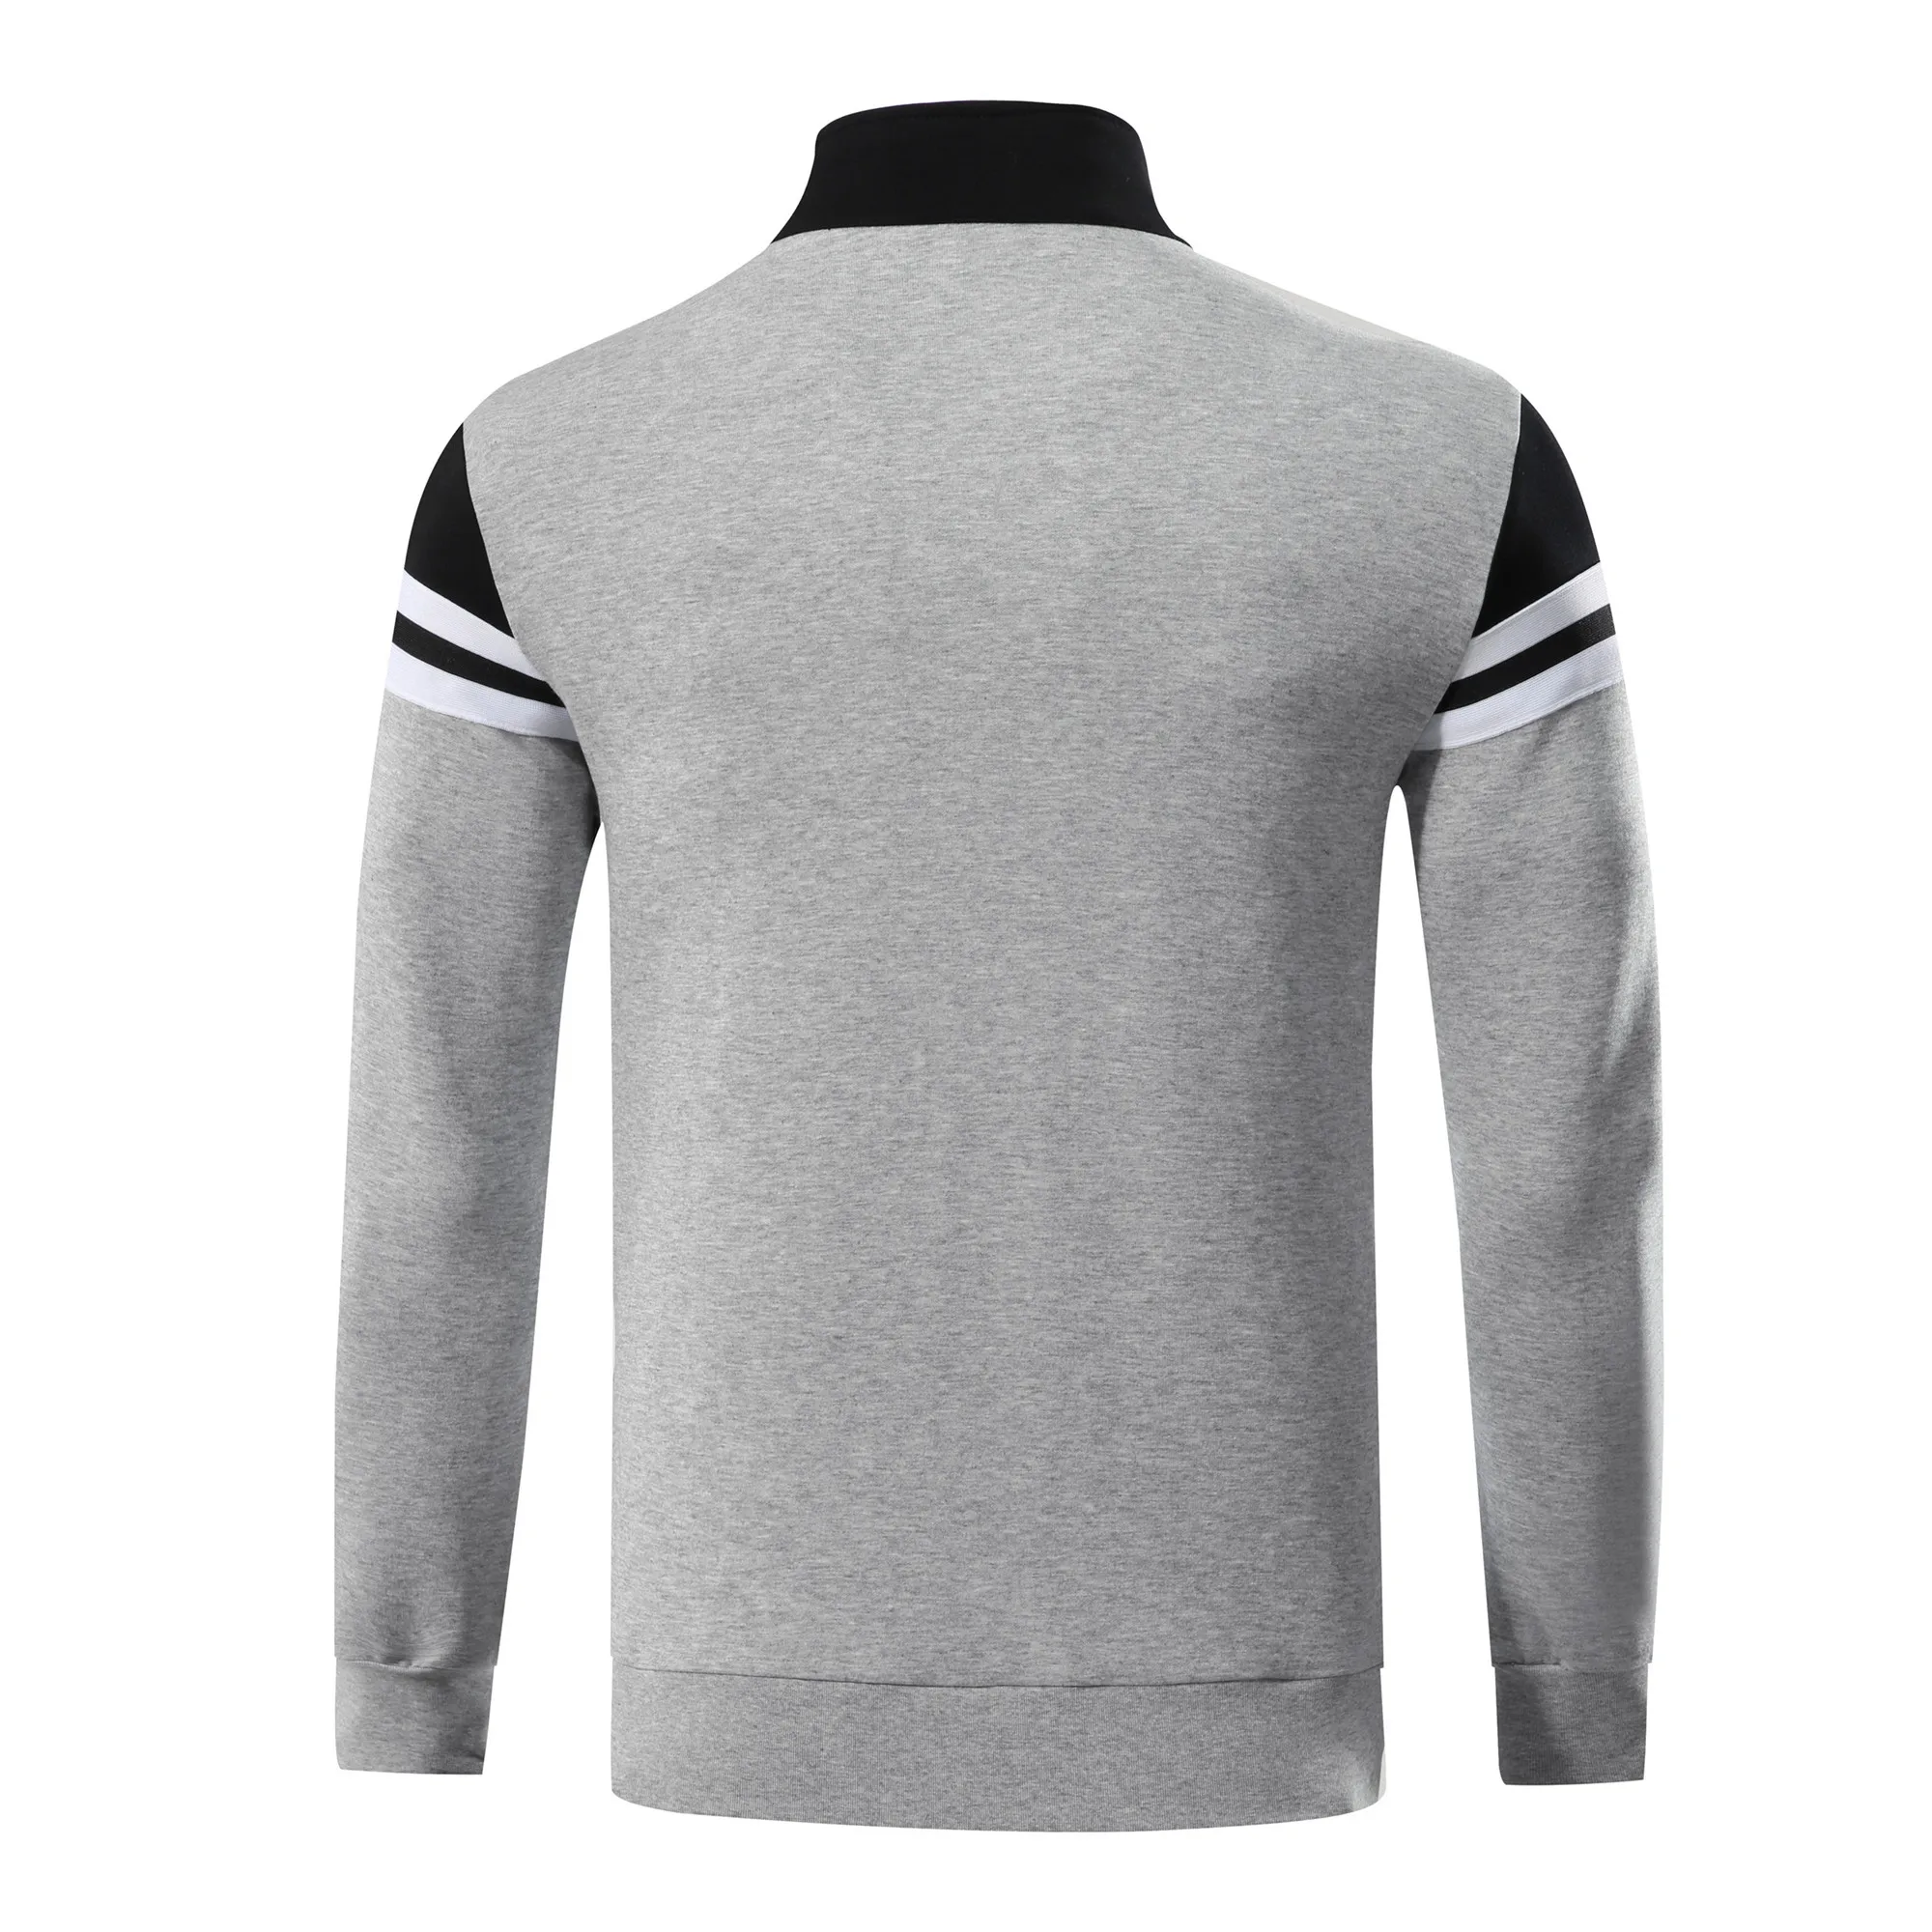 2019New хлопчатобумажные баскетбольные игровая футболка Униформа Survete Мужская t футбол Futbol мужская куртка для бега женская спортивная тренировочная форма